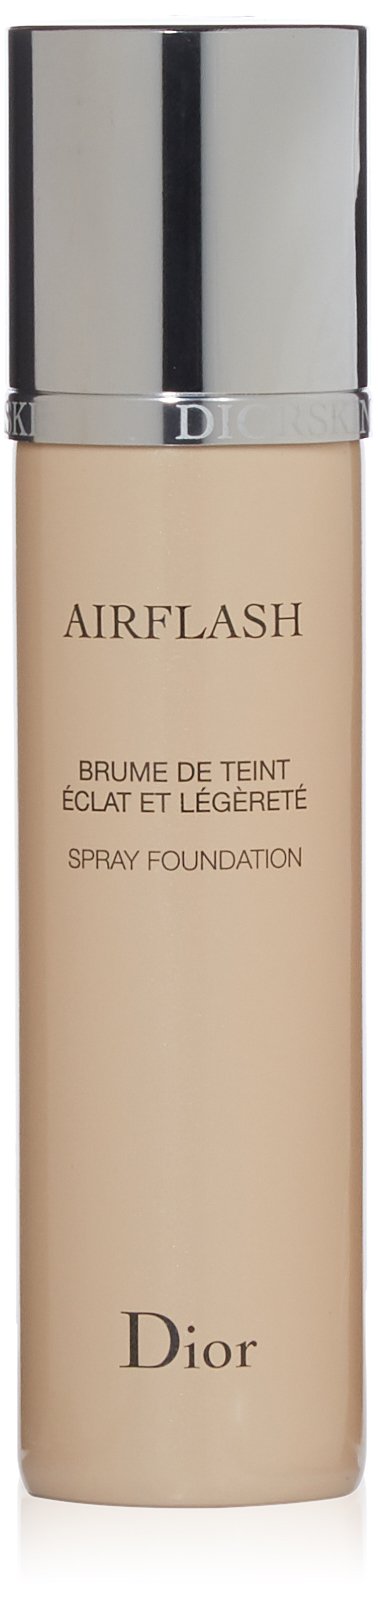 Dior Airflash Spray Foundation Galeries De La Capitale